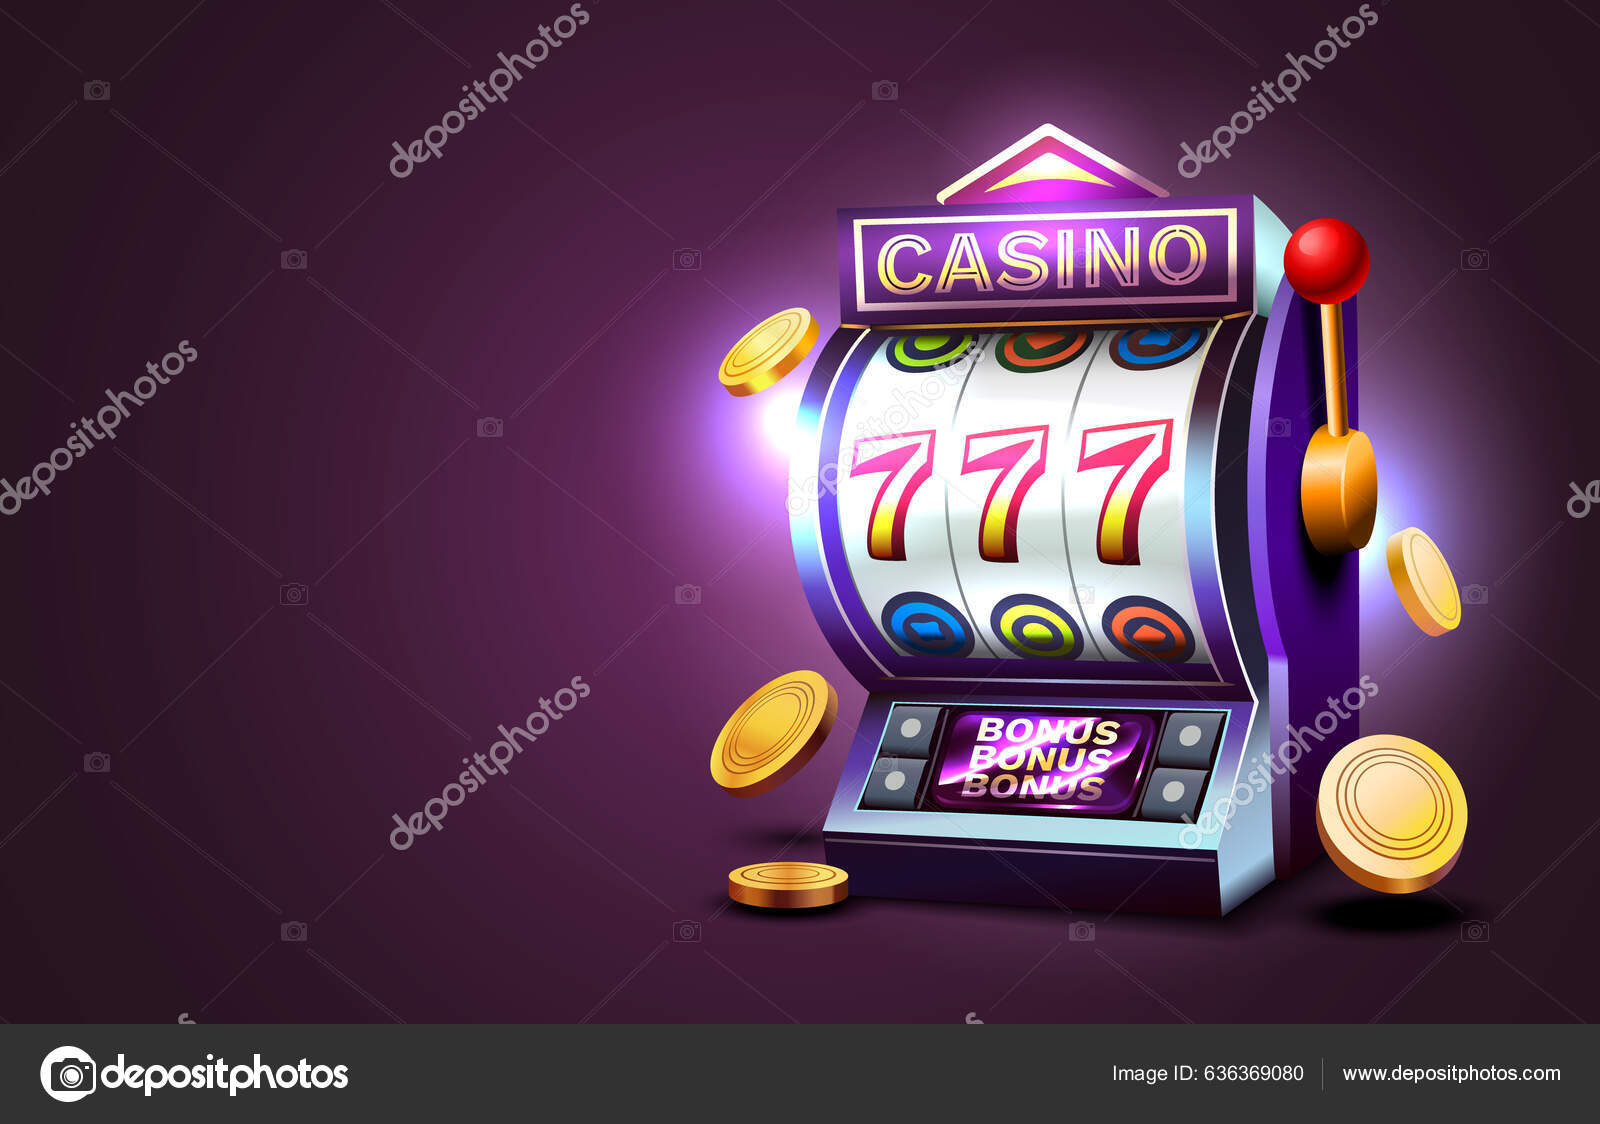 Publicidade do casino 777 online, dois dados de jogo de casino